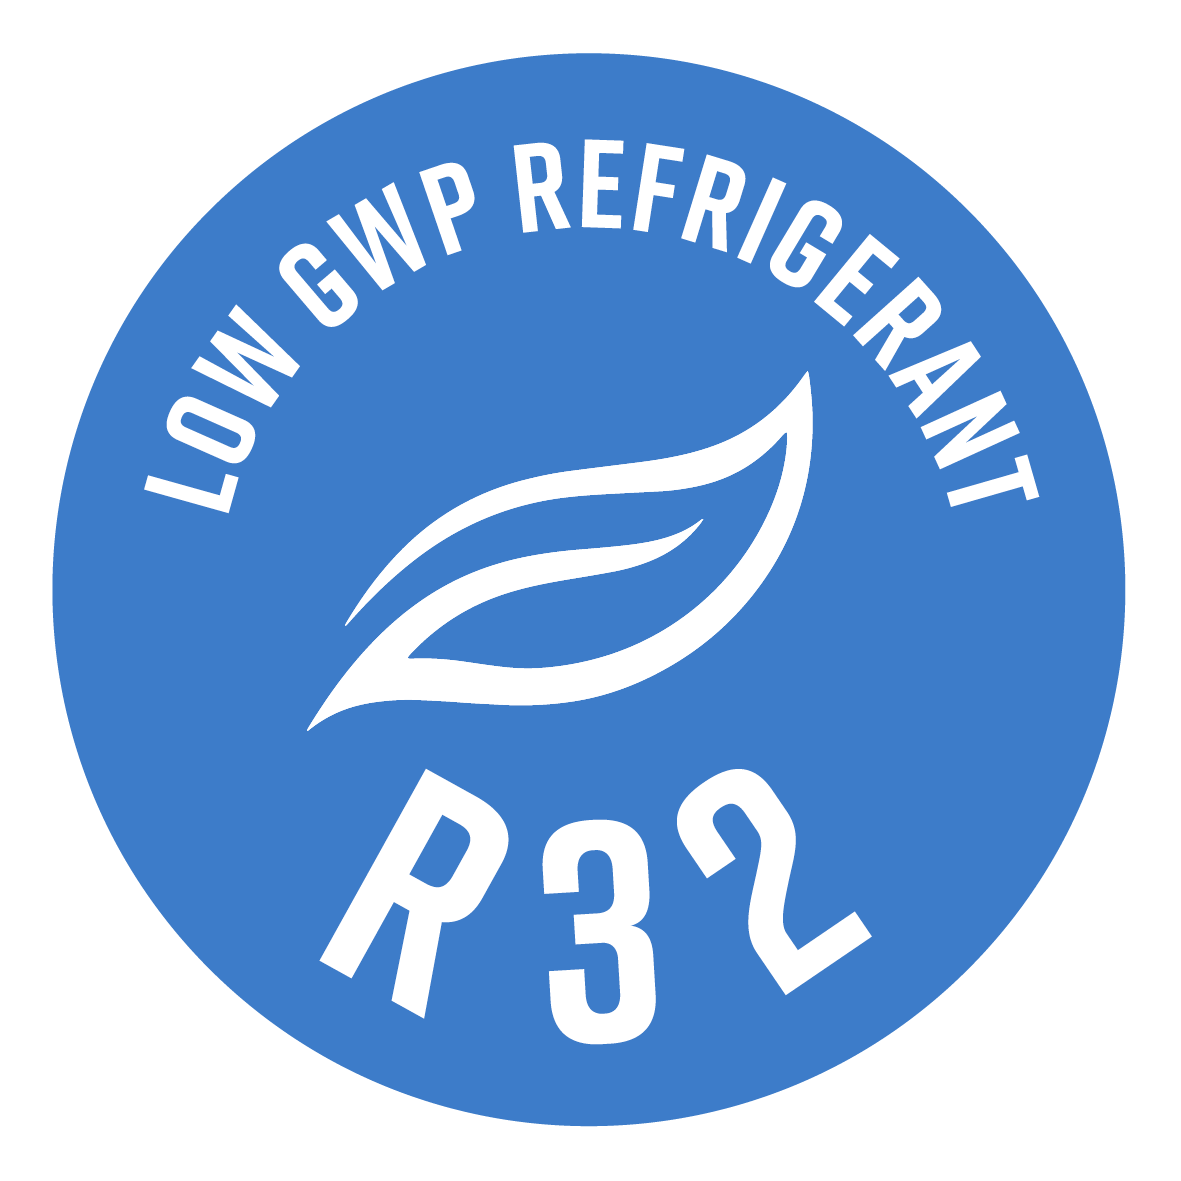 En los tamaños hasta 10 kW, utiliza el refrigerante
R32, caracterizado por una mayor eficiencia y un
efecto invernadero reducido en casi el 70% (respecto
al R410A).